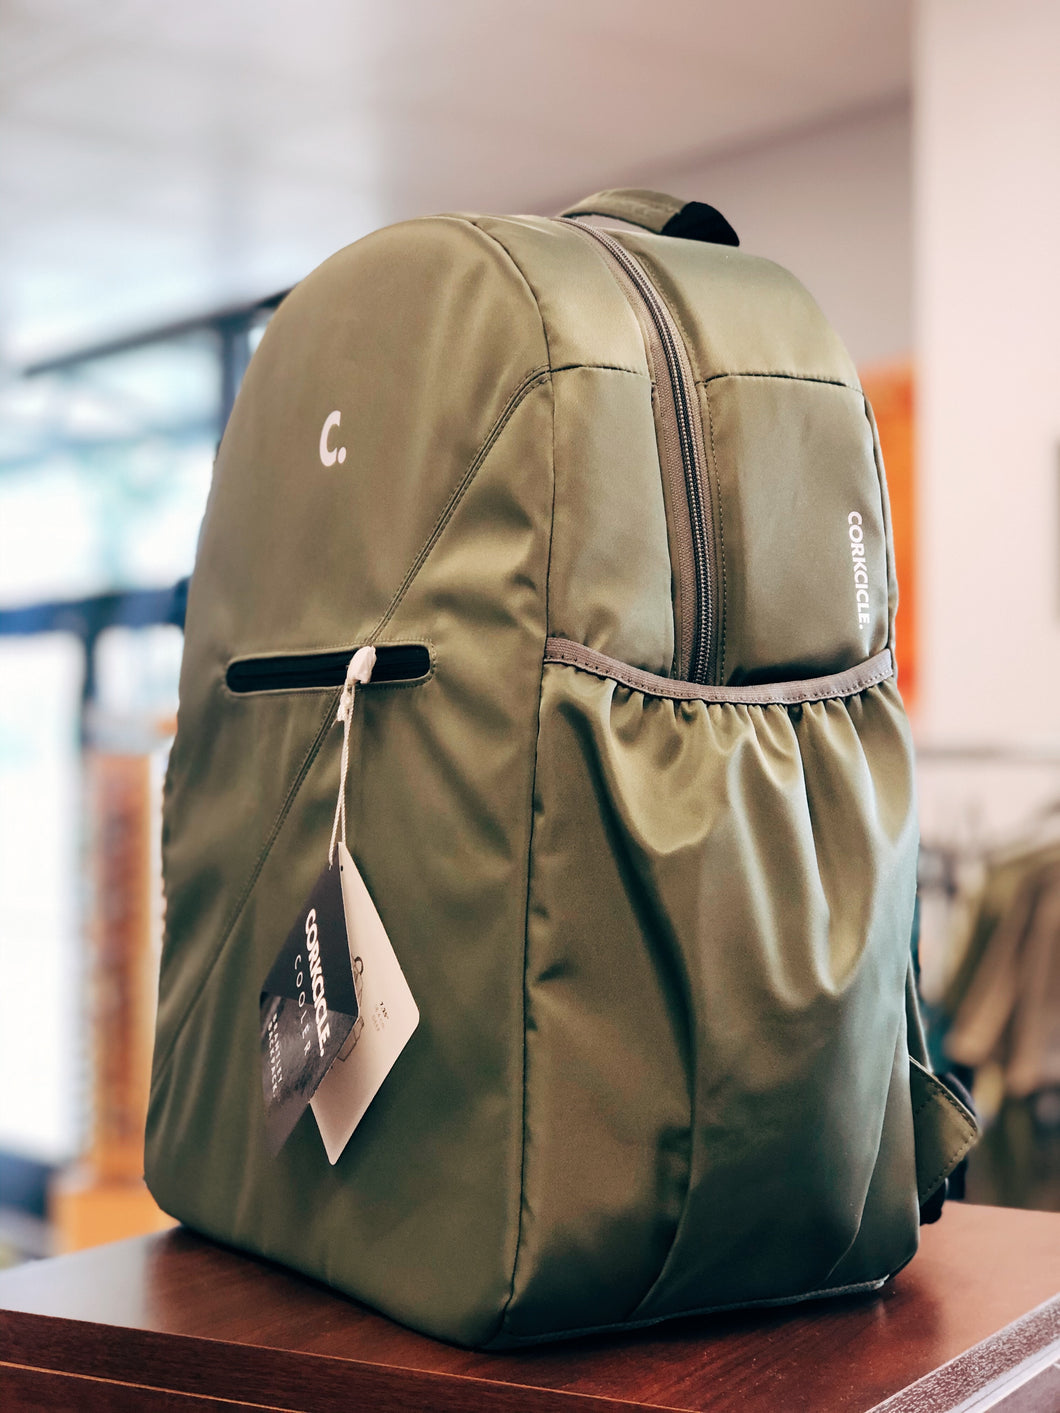 Corkcicle Cooler Backpack